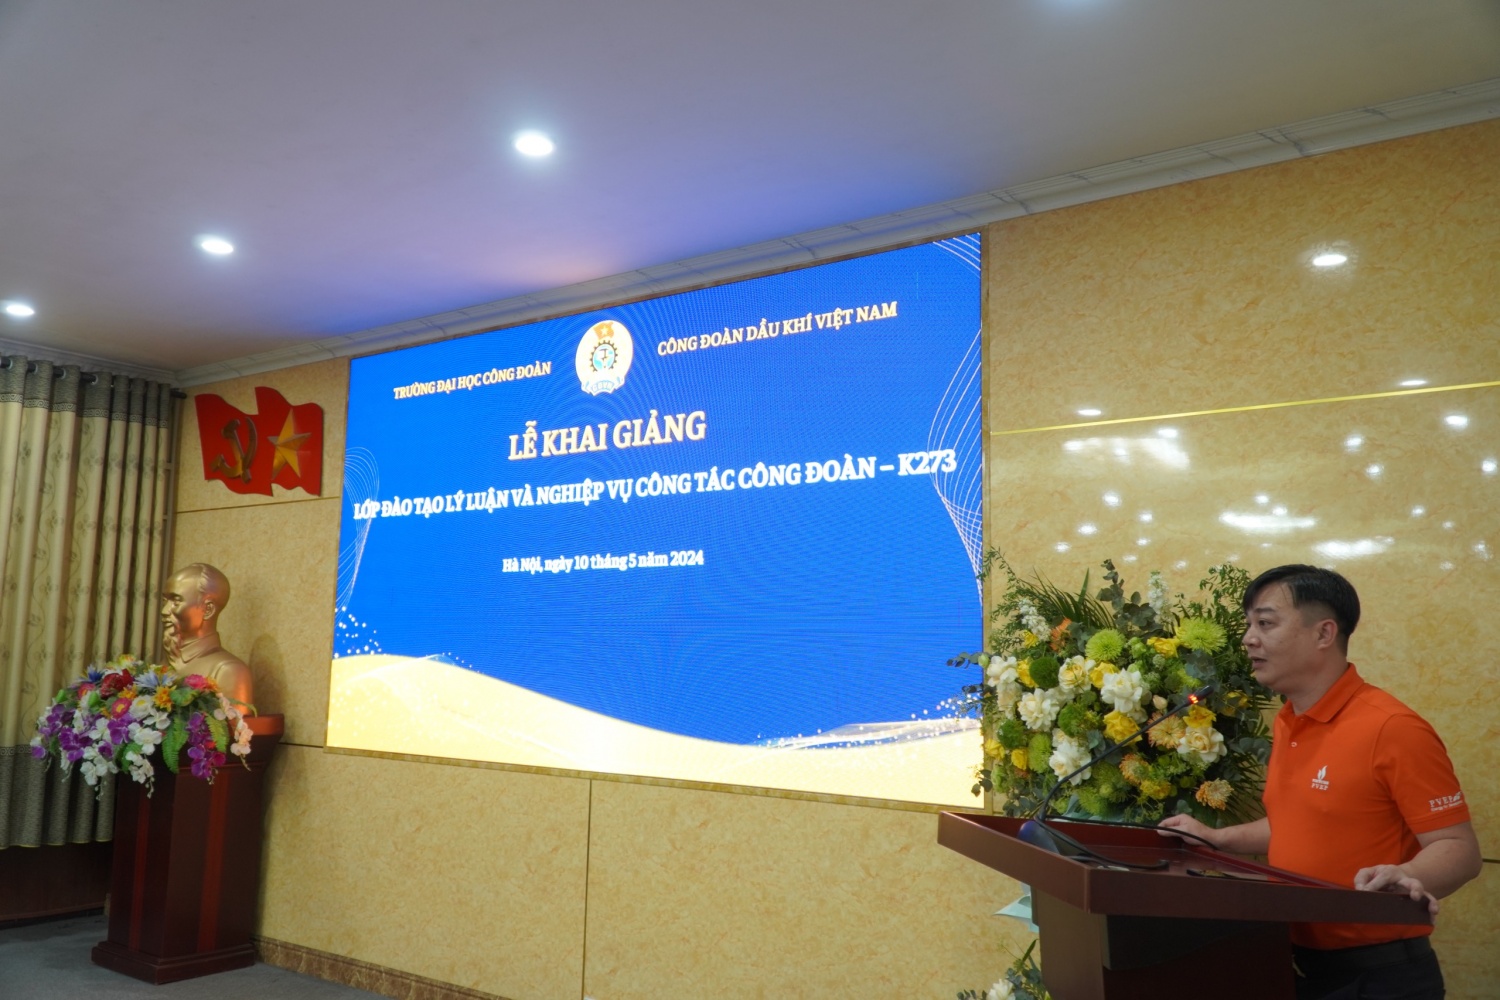 Đồng chí Nguyễn Duy Hưng – cán bộ Công đoàn PVEP phát biểu tại buổi lễ.